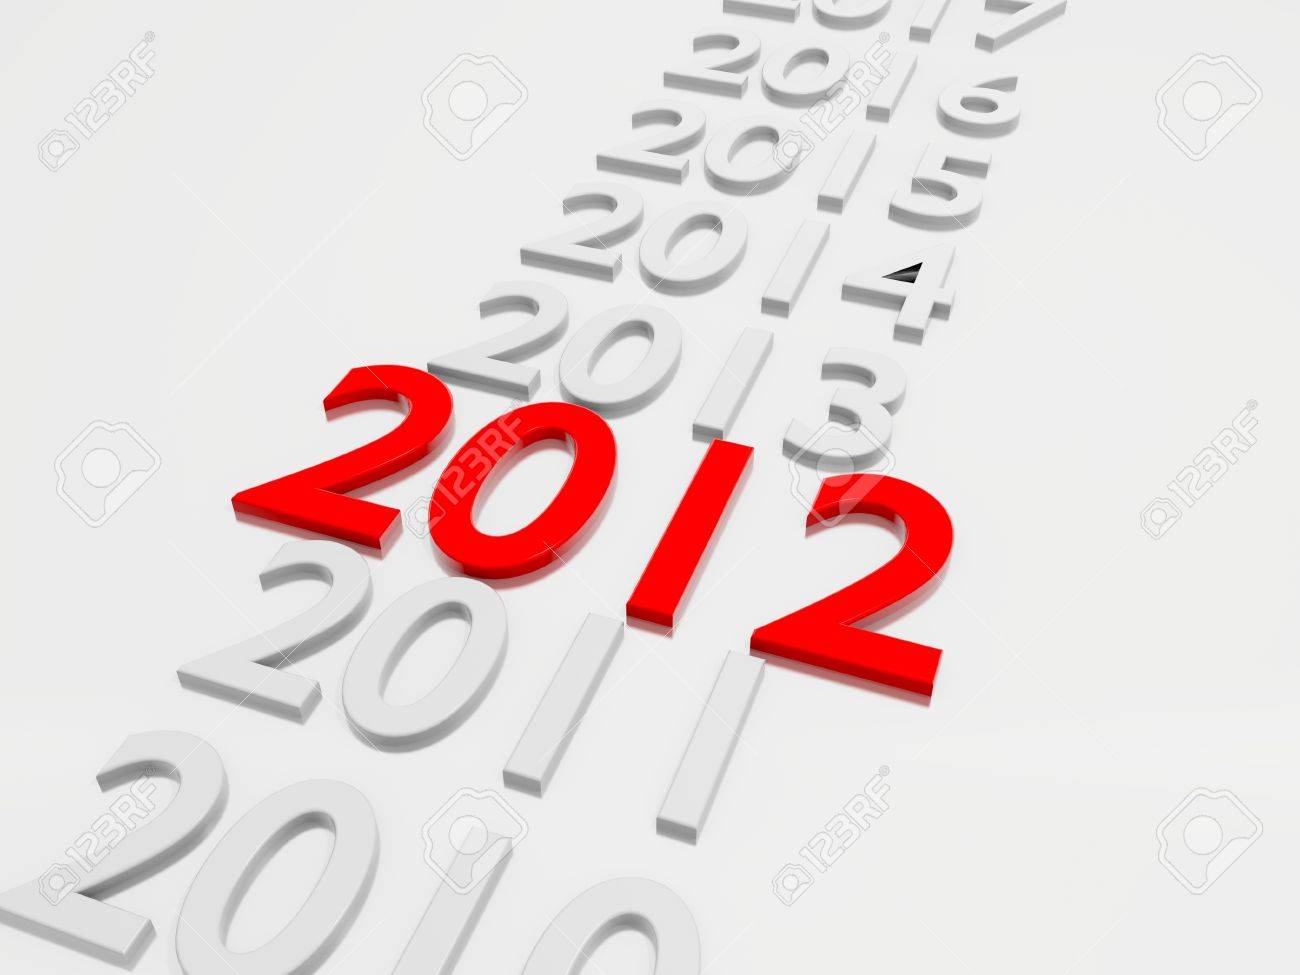 8604330-nouvelle-année-2012-en-suivi-par-les-années-2013-à-2019.jpg